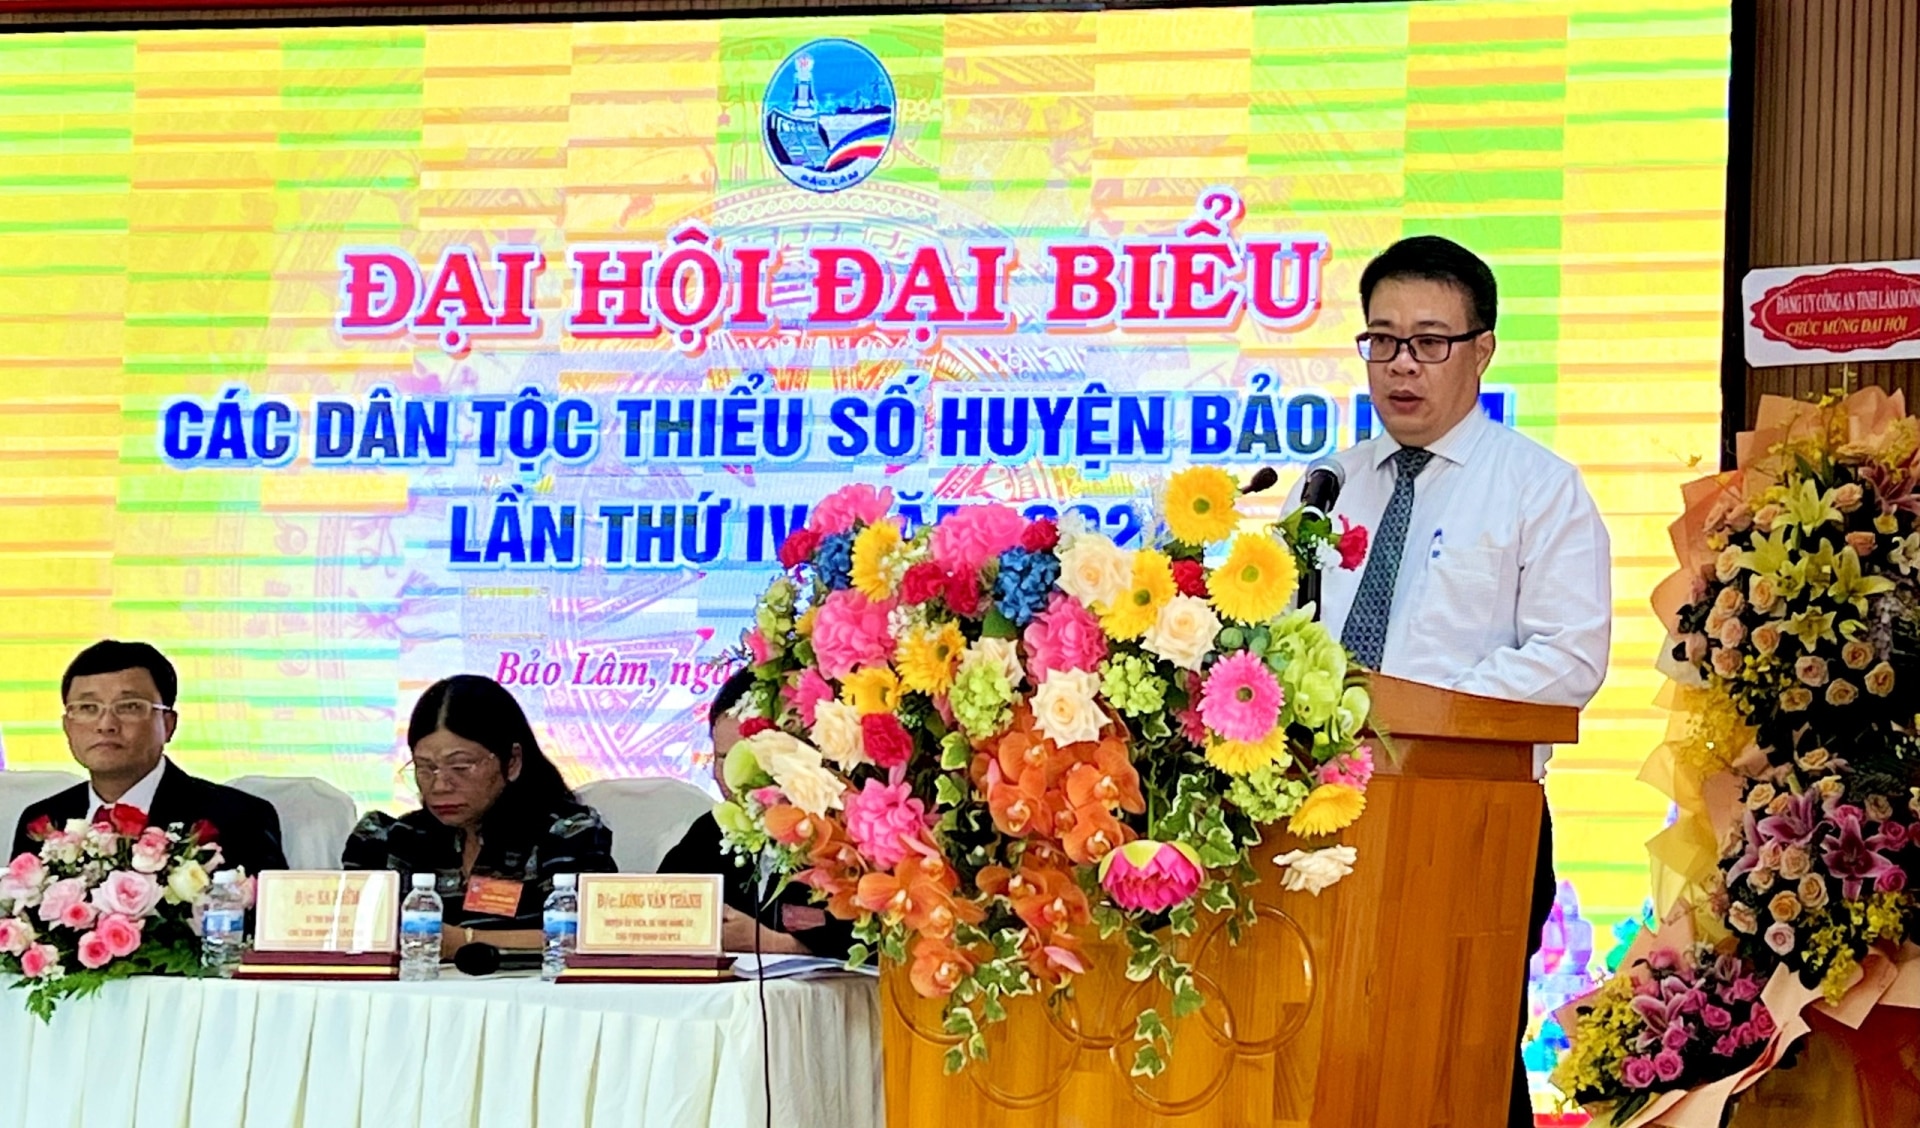 Đồng chí Nguyễn Ngọc Phúc - Phó Chủ tịch UBND tỉnh Lâm Đồng phát biểu chỉ đạo tại Đại hội